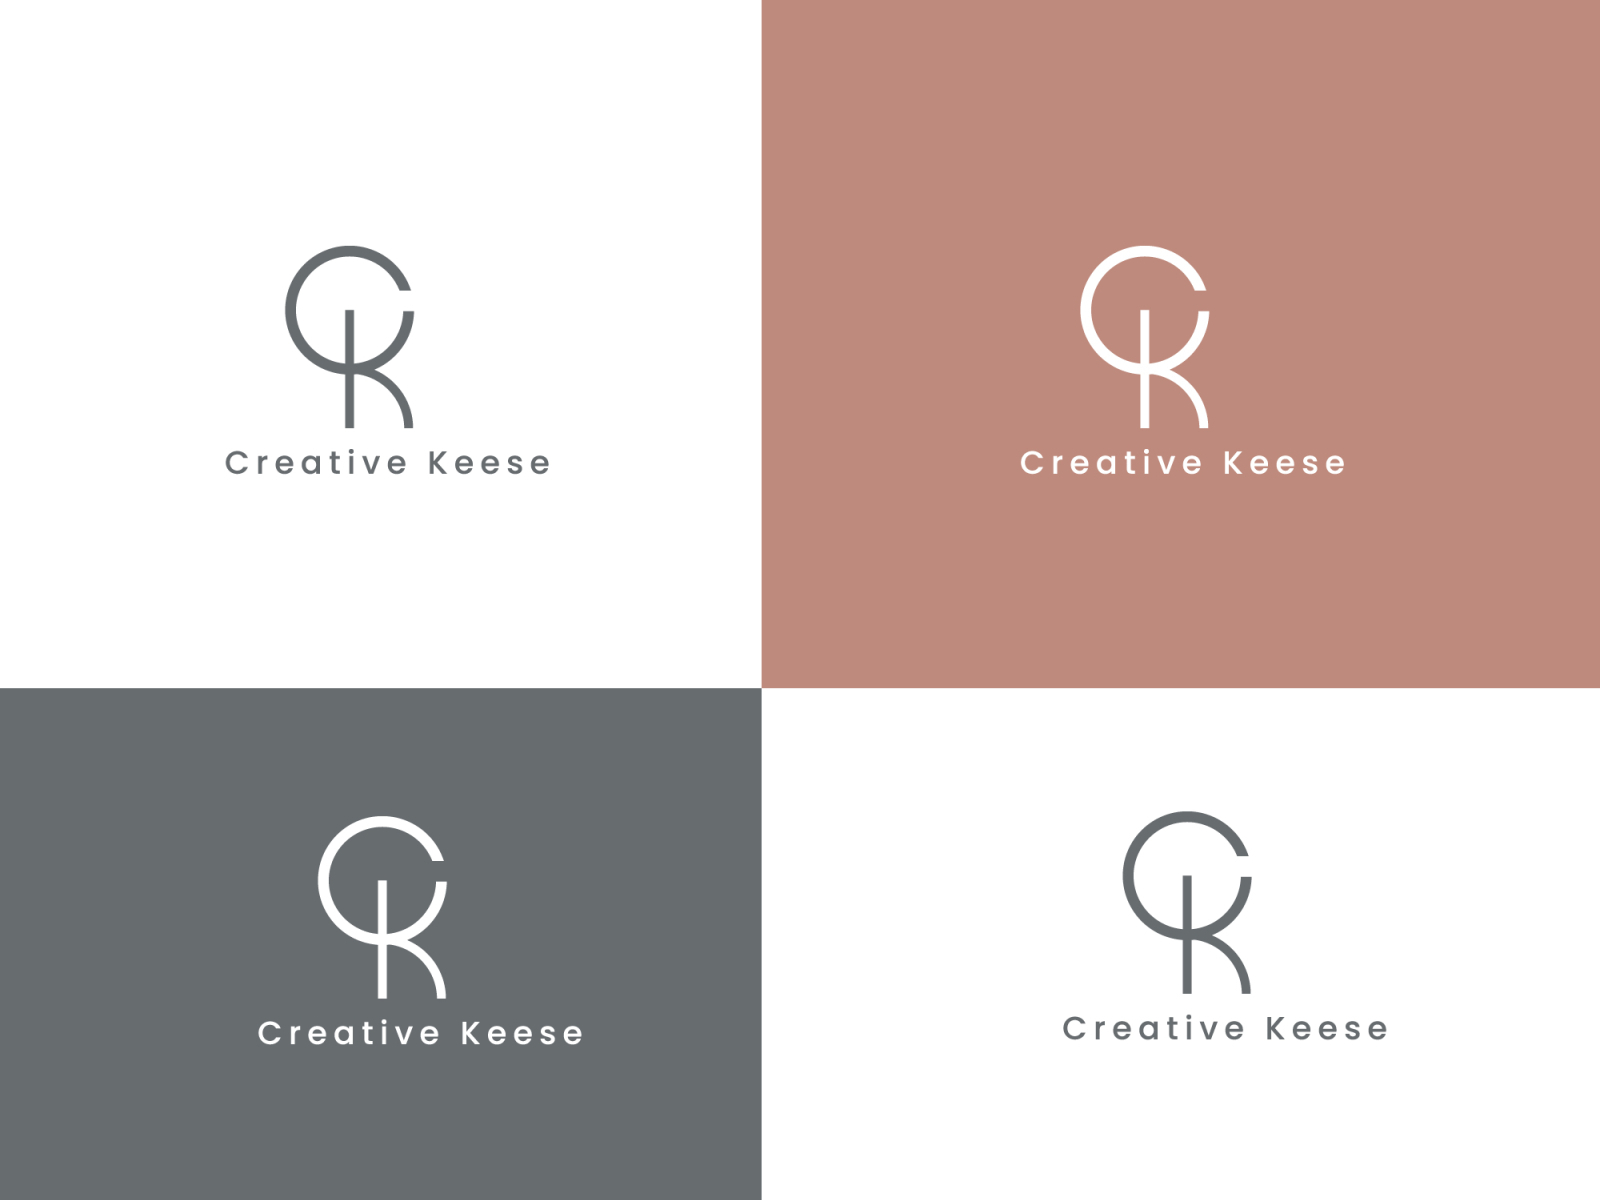 CK letter minimal logo design - logo designer by Xo Studio on Dribbble